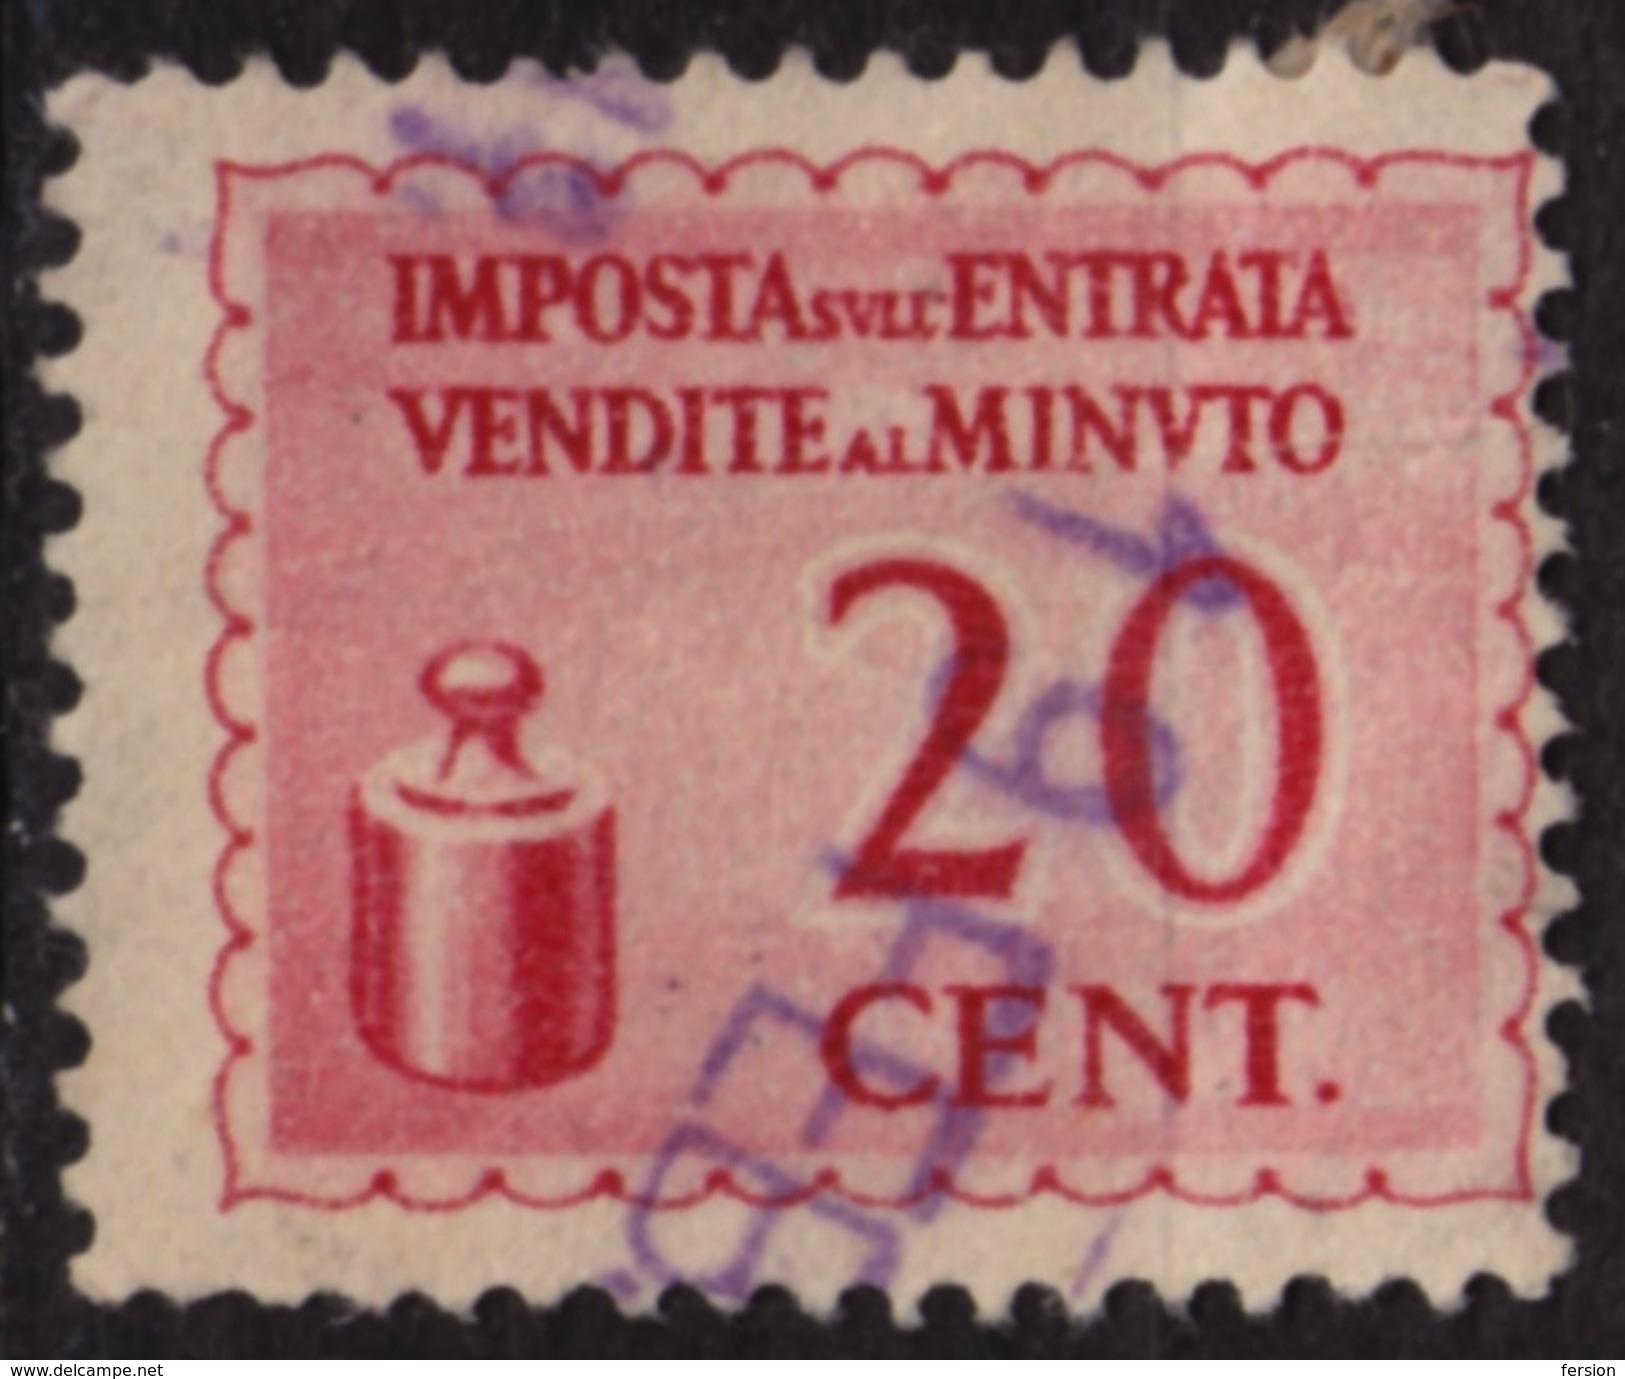 Italy - Sales Tax VAT Revenue Stamp / Imposta Entrata Vendite Minuto - Used - 20 Cent - Fiscaux